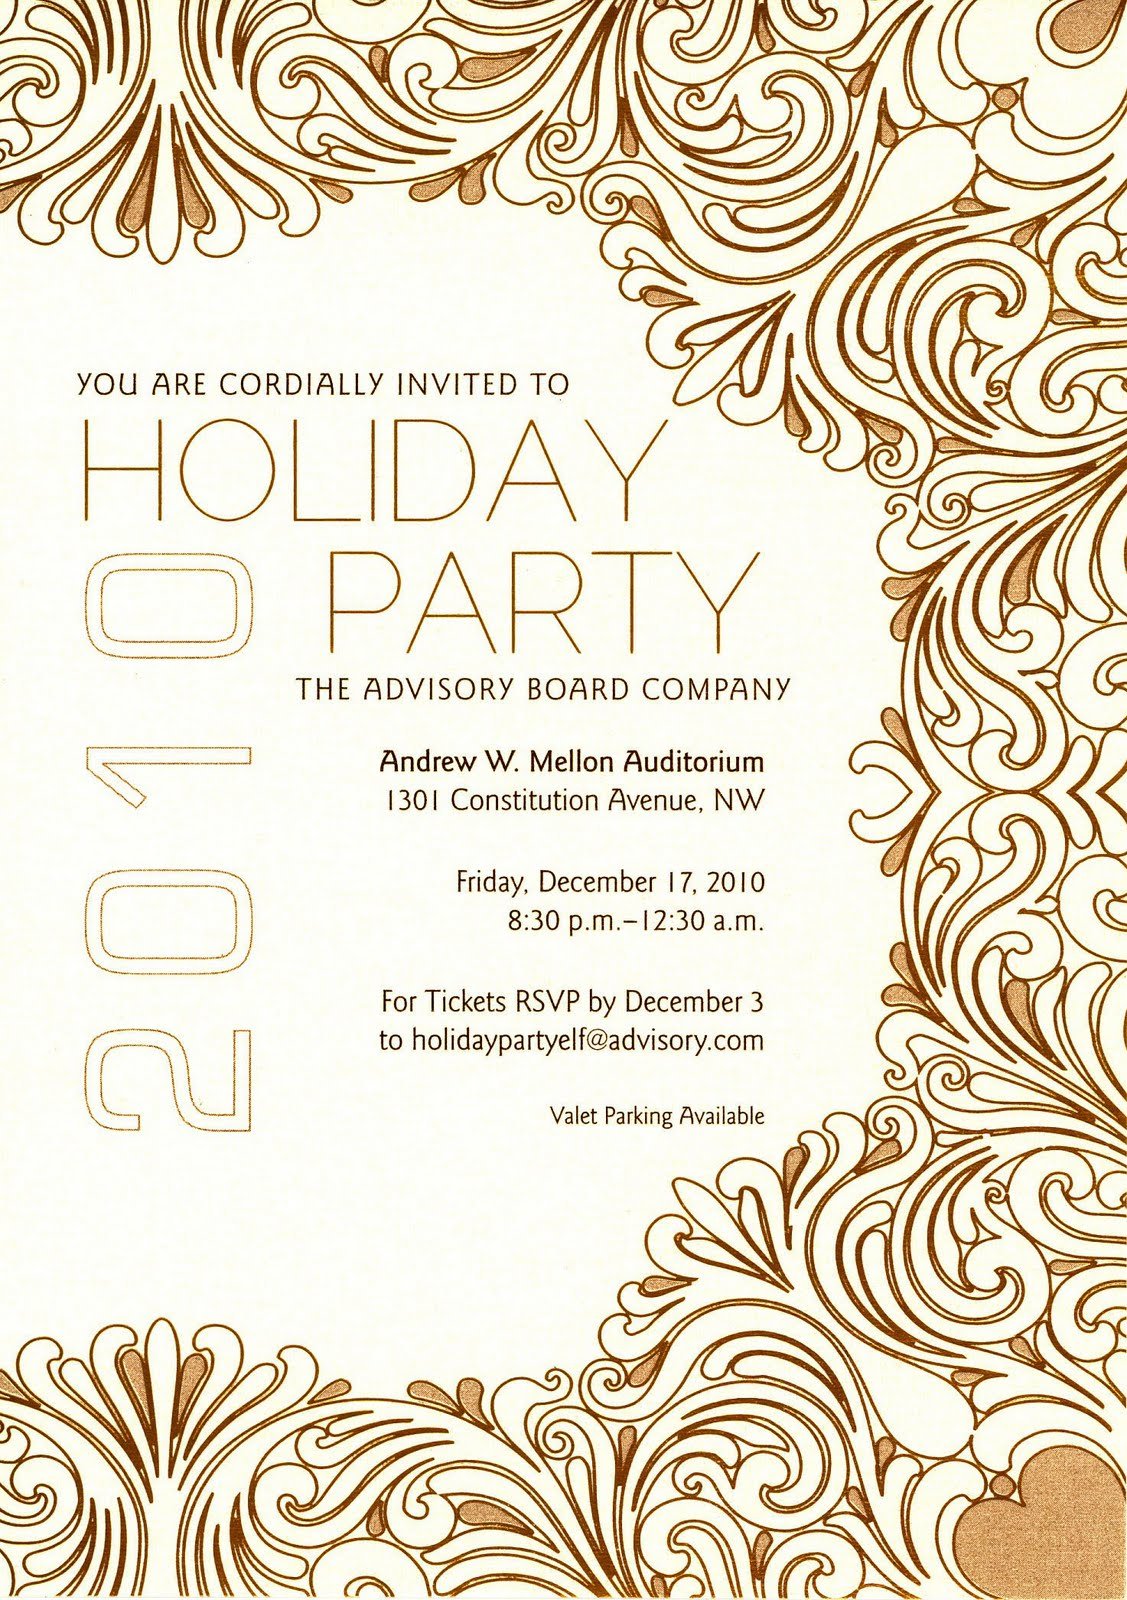 Company Christmas Party Invitations